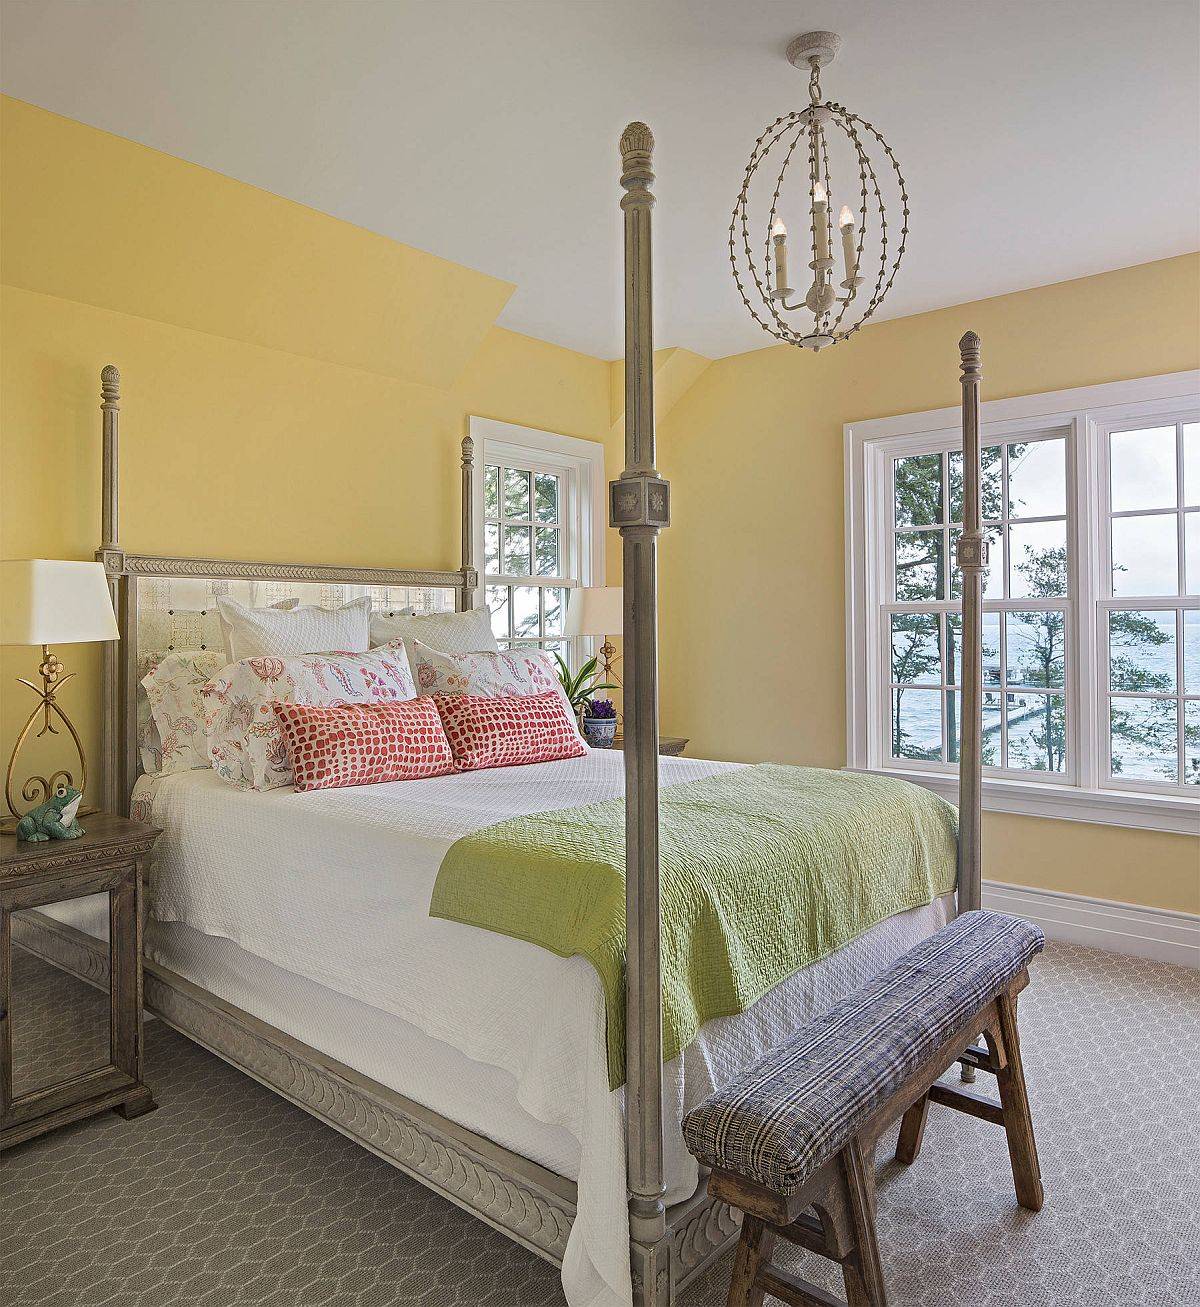 Phòng ngủ phong cách bãi biển quyến rũ hơn với sắc vàng nhẹ nhàng cùng ánh sáng tự nhiên ngập tràn.